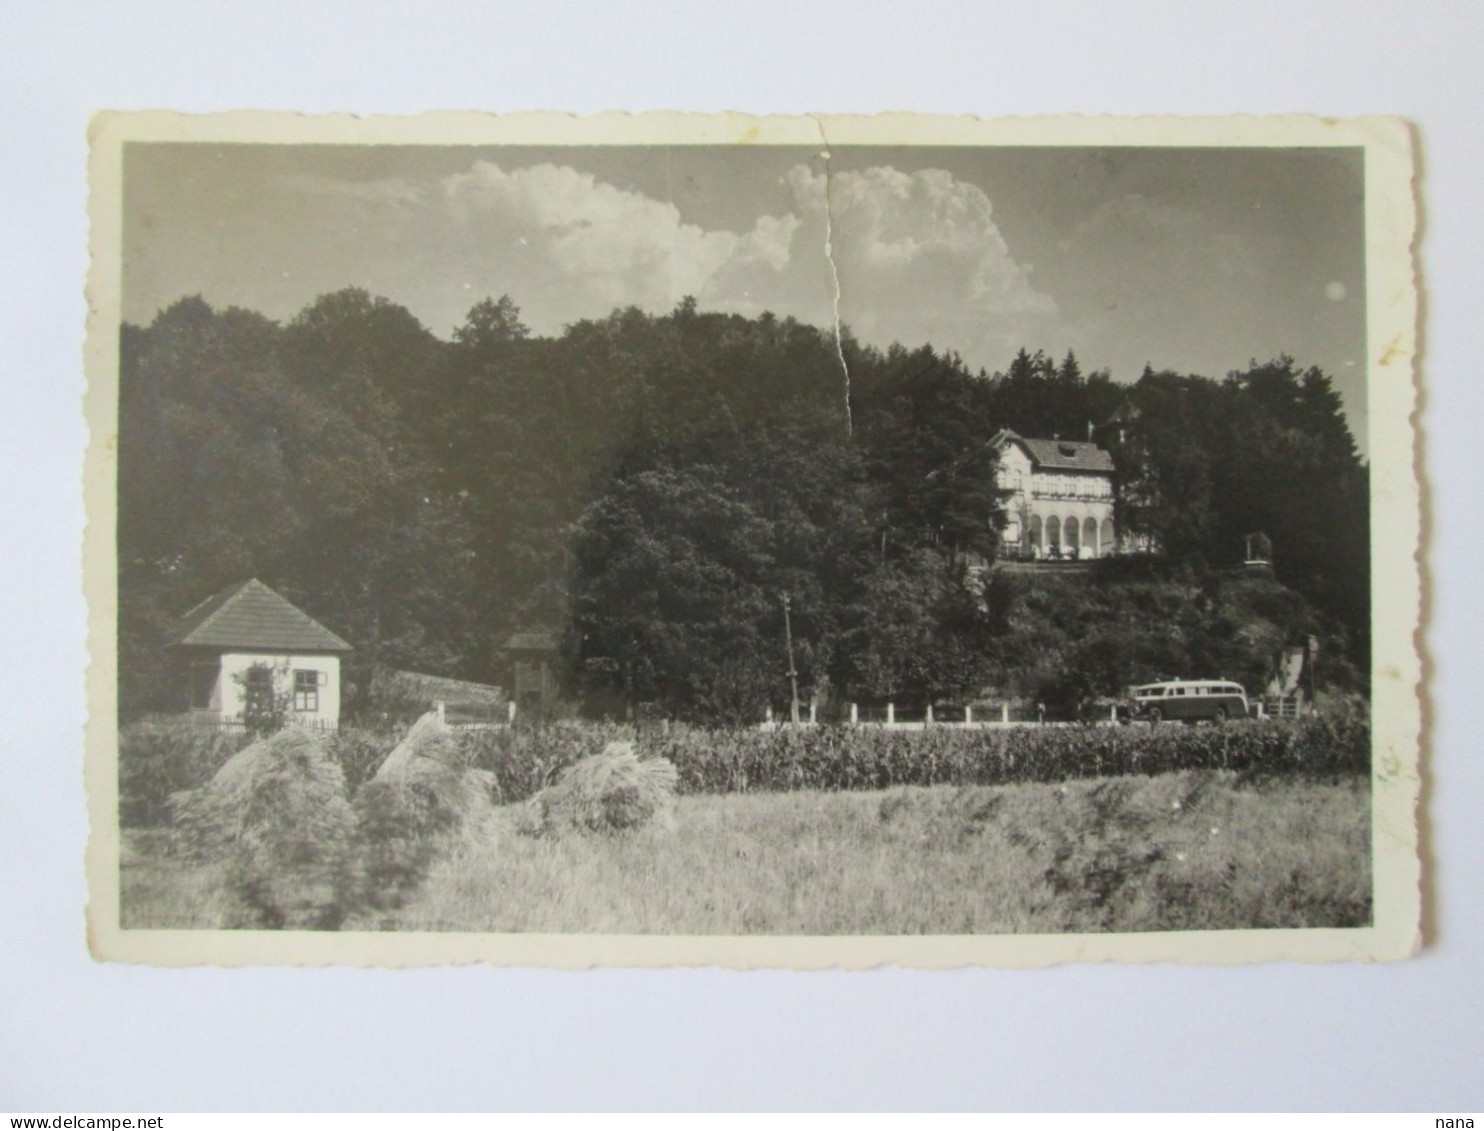 Romania-Ciucea(Cluj):Le Chateau D'Octavian Goga Carte Photo Vers 1940/Octavian Goga Castle Photo Postcard 1940s - Romania